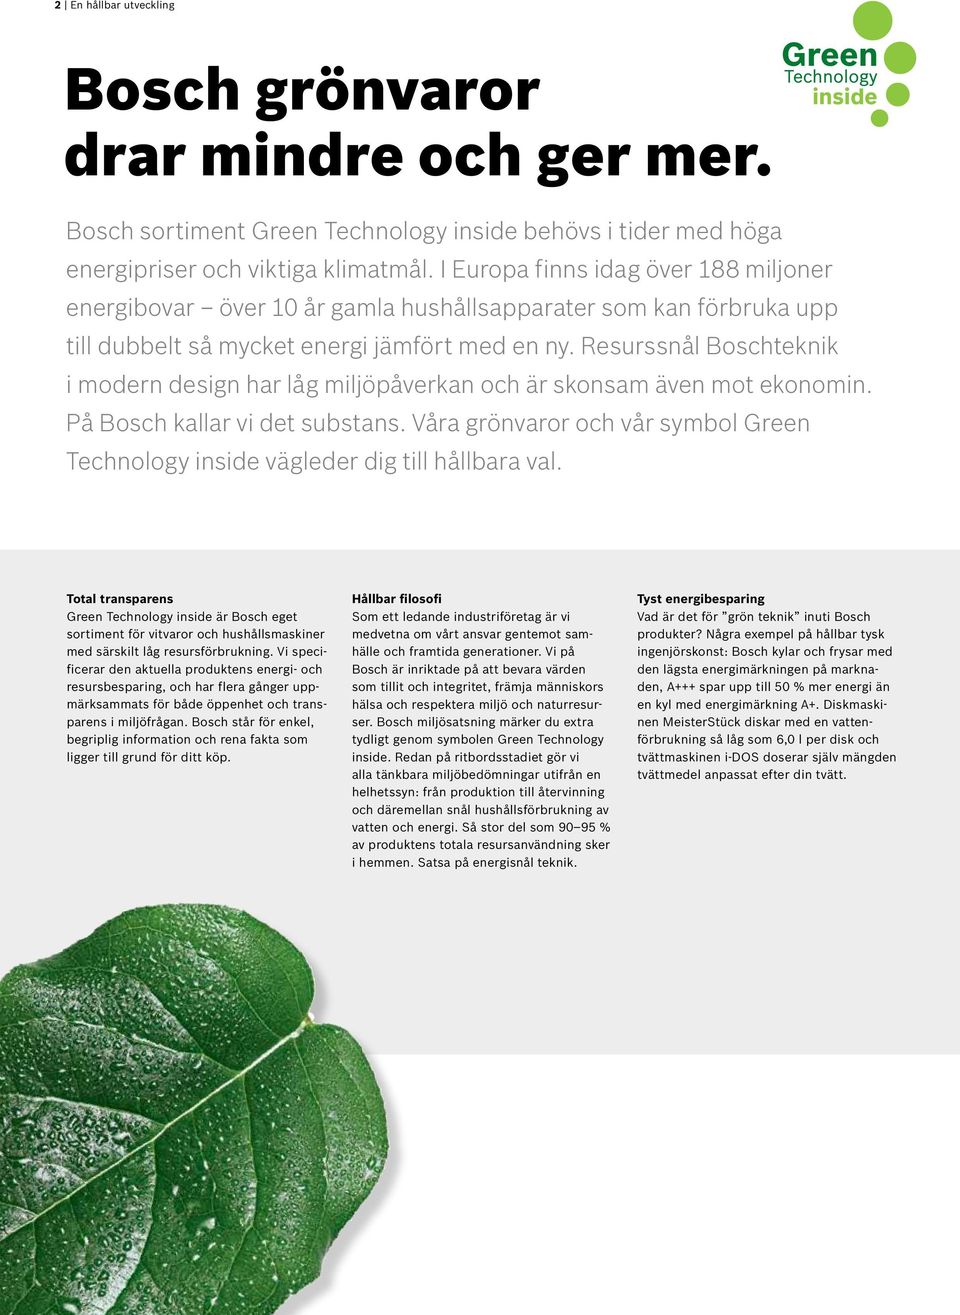 Resurssnål Boschteknik i modern design har låg miljöpåverkan och är skonsam även mot ekonomin. På Bosch kallar vi det substans.